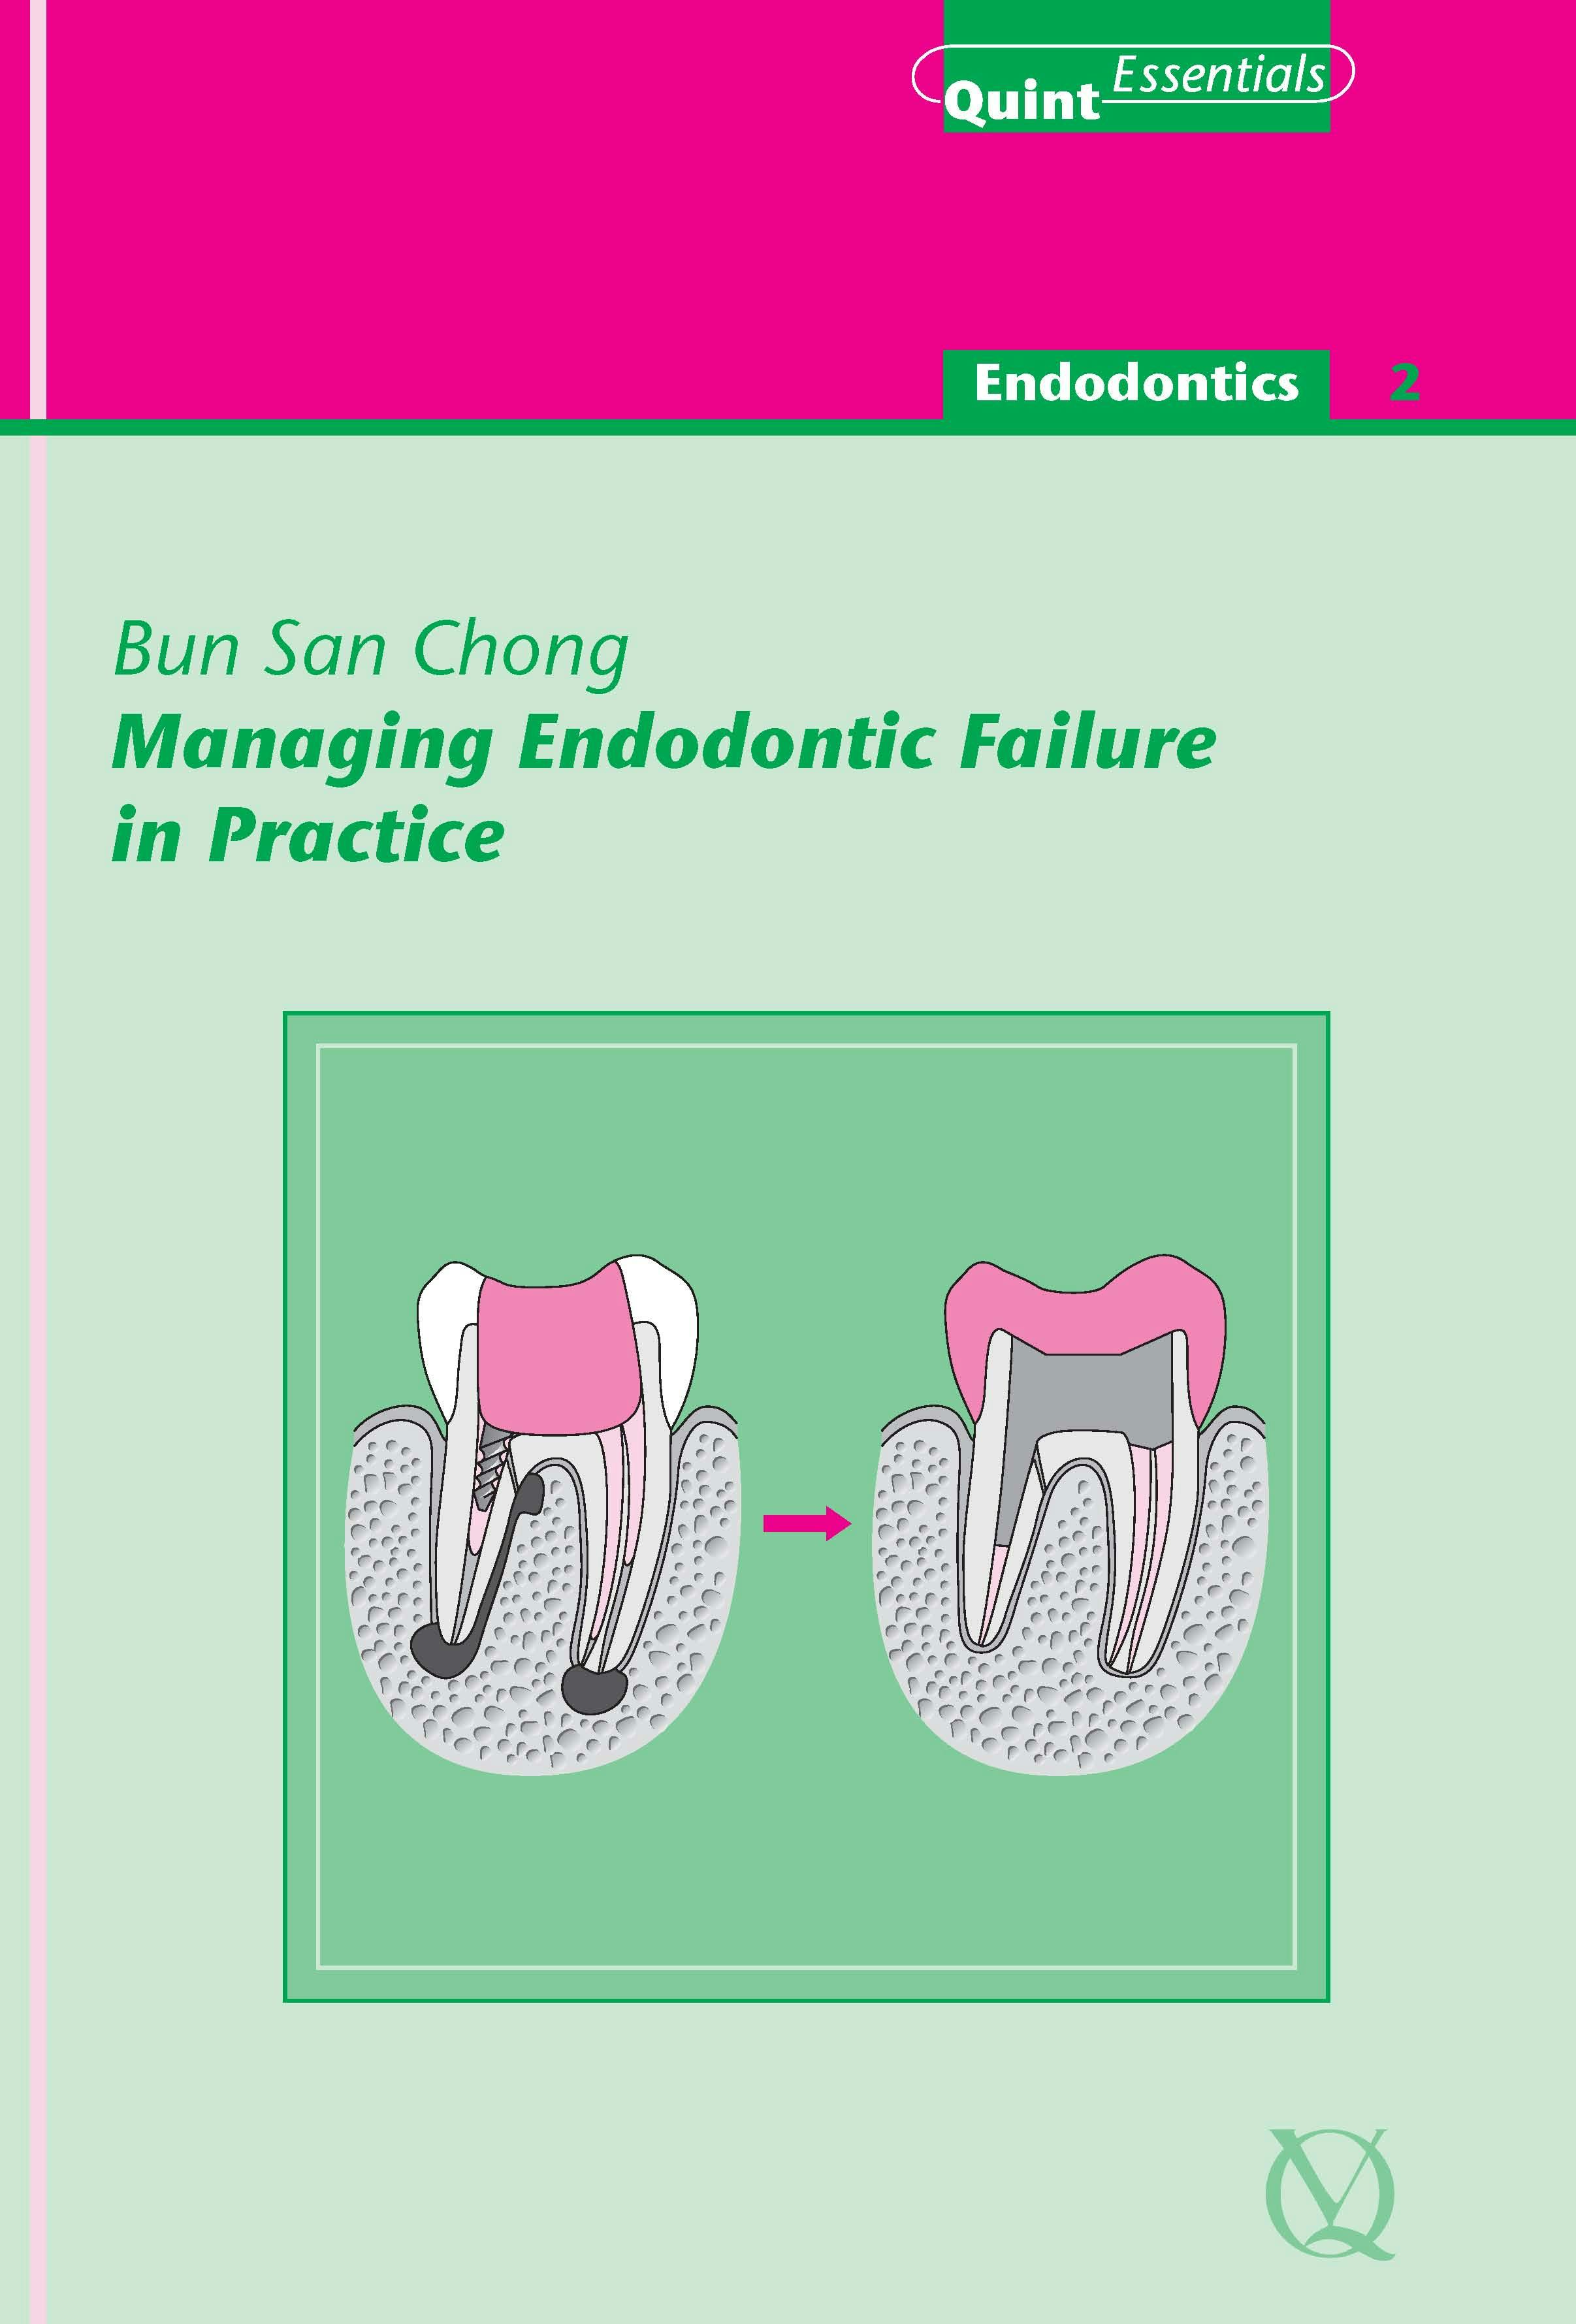 Managing Endodontic Failure in Practice - Bun San Chong